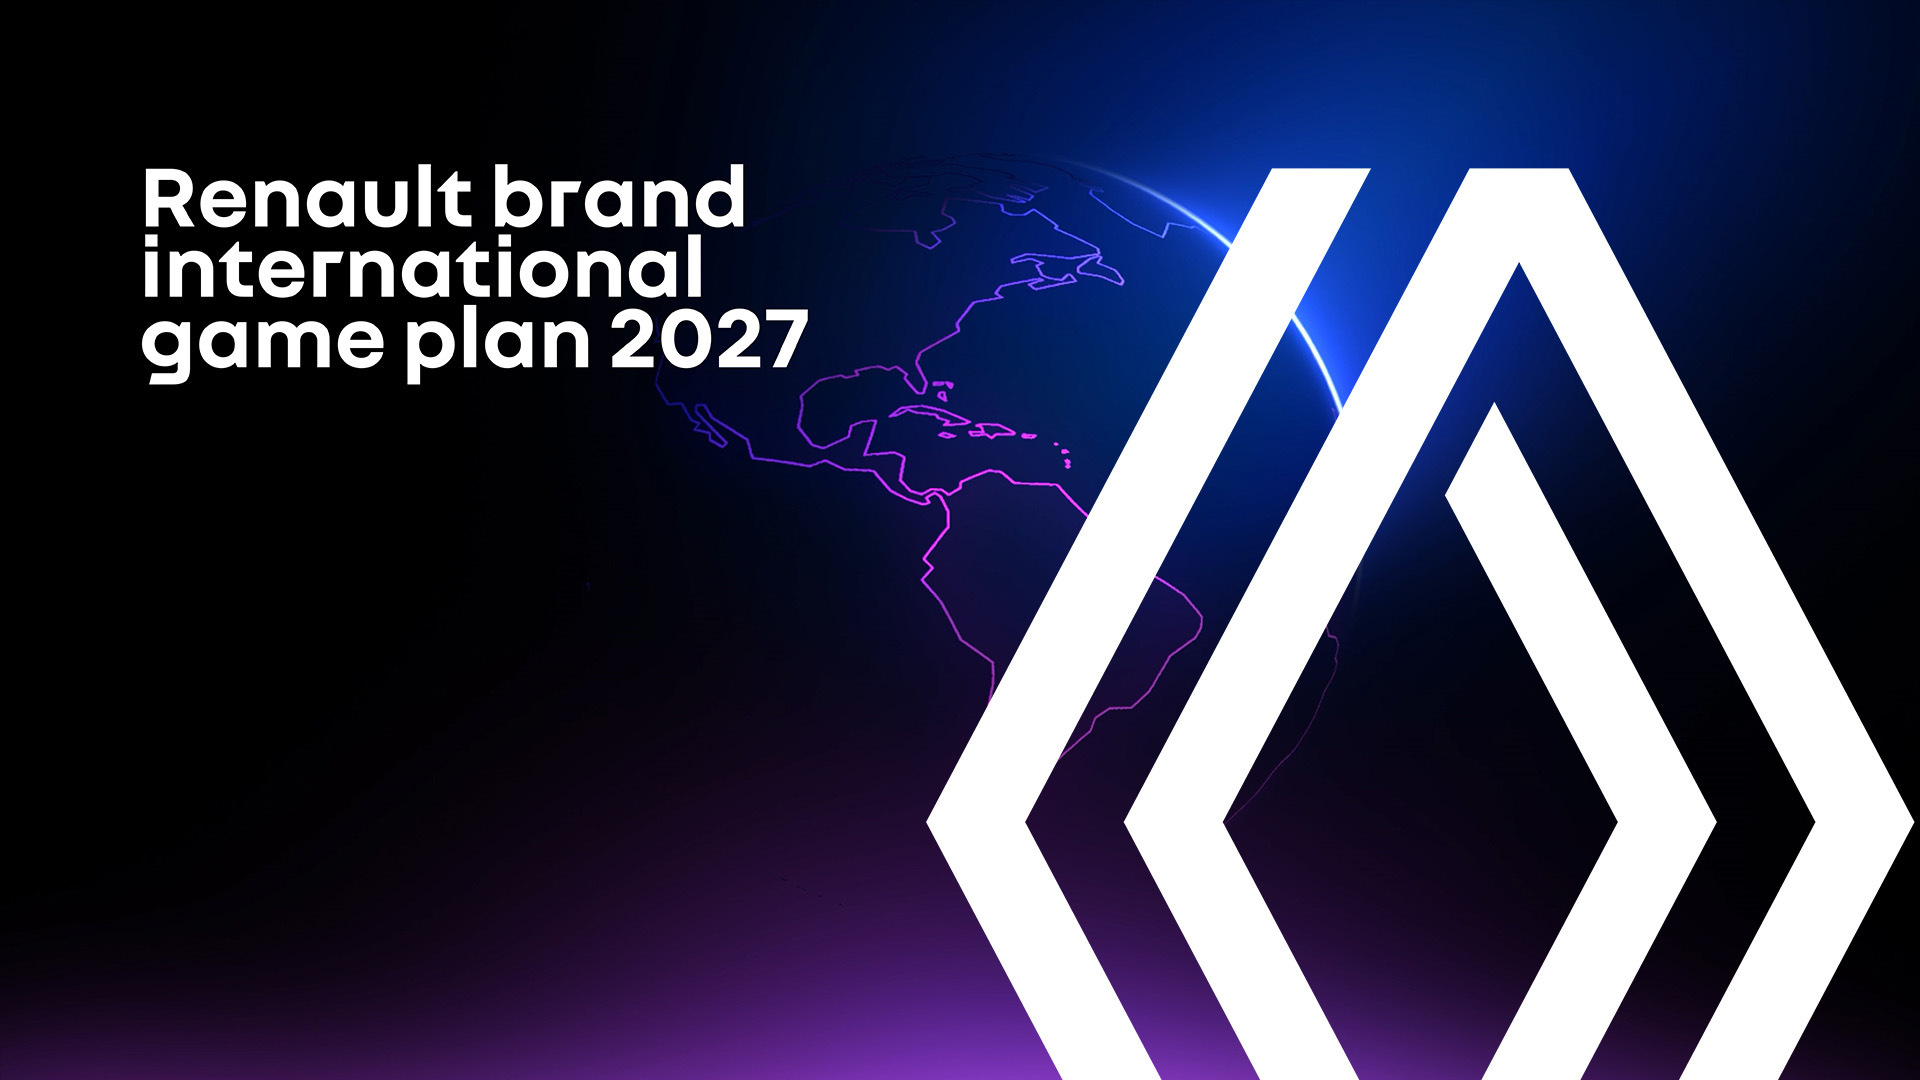 Renault brand international game plan 2027